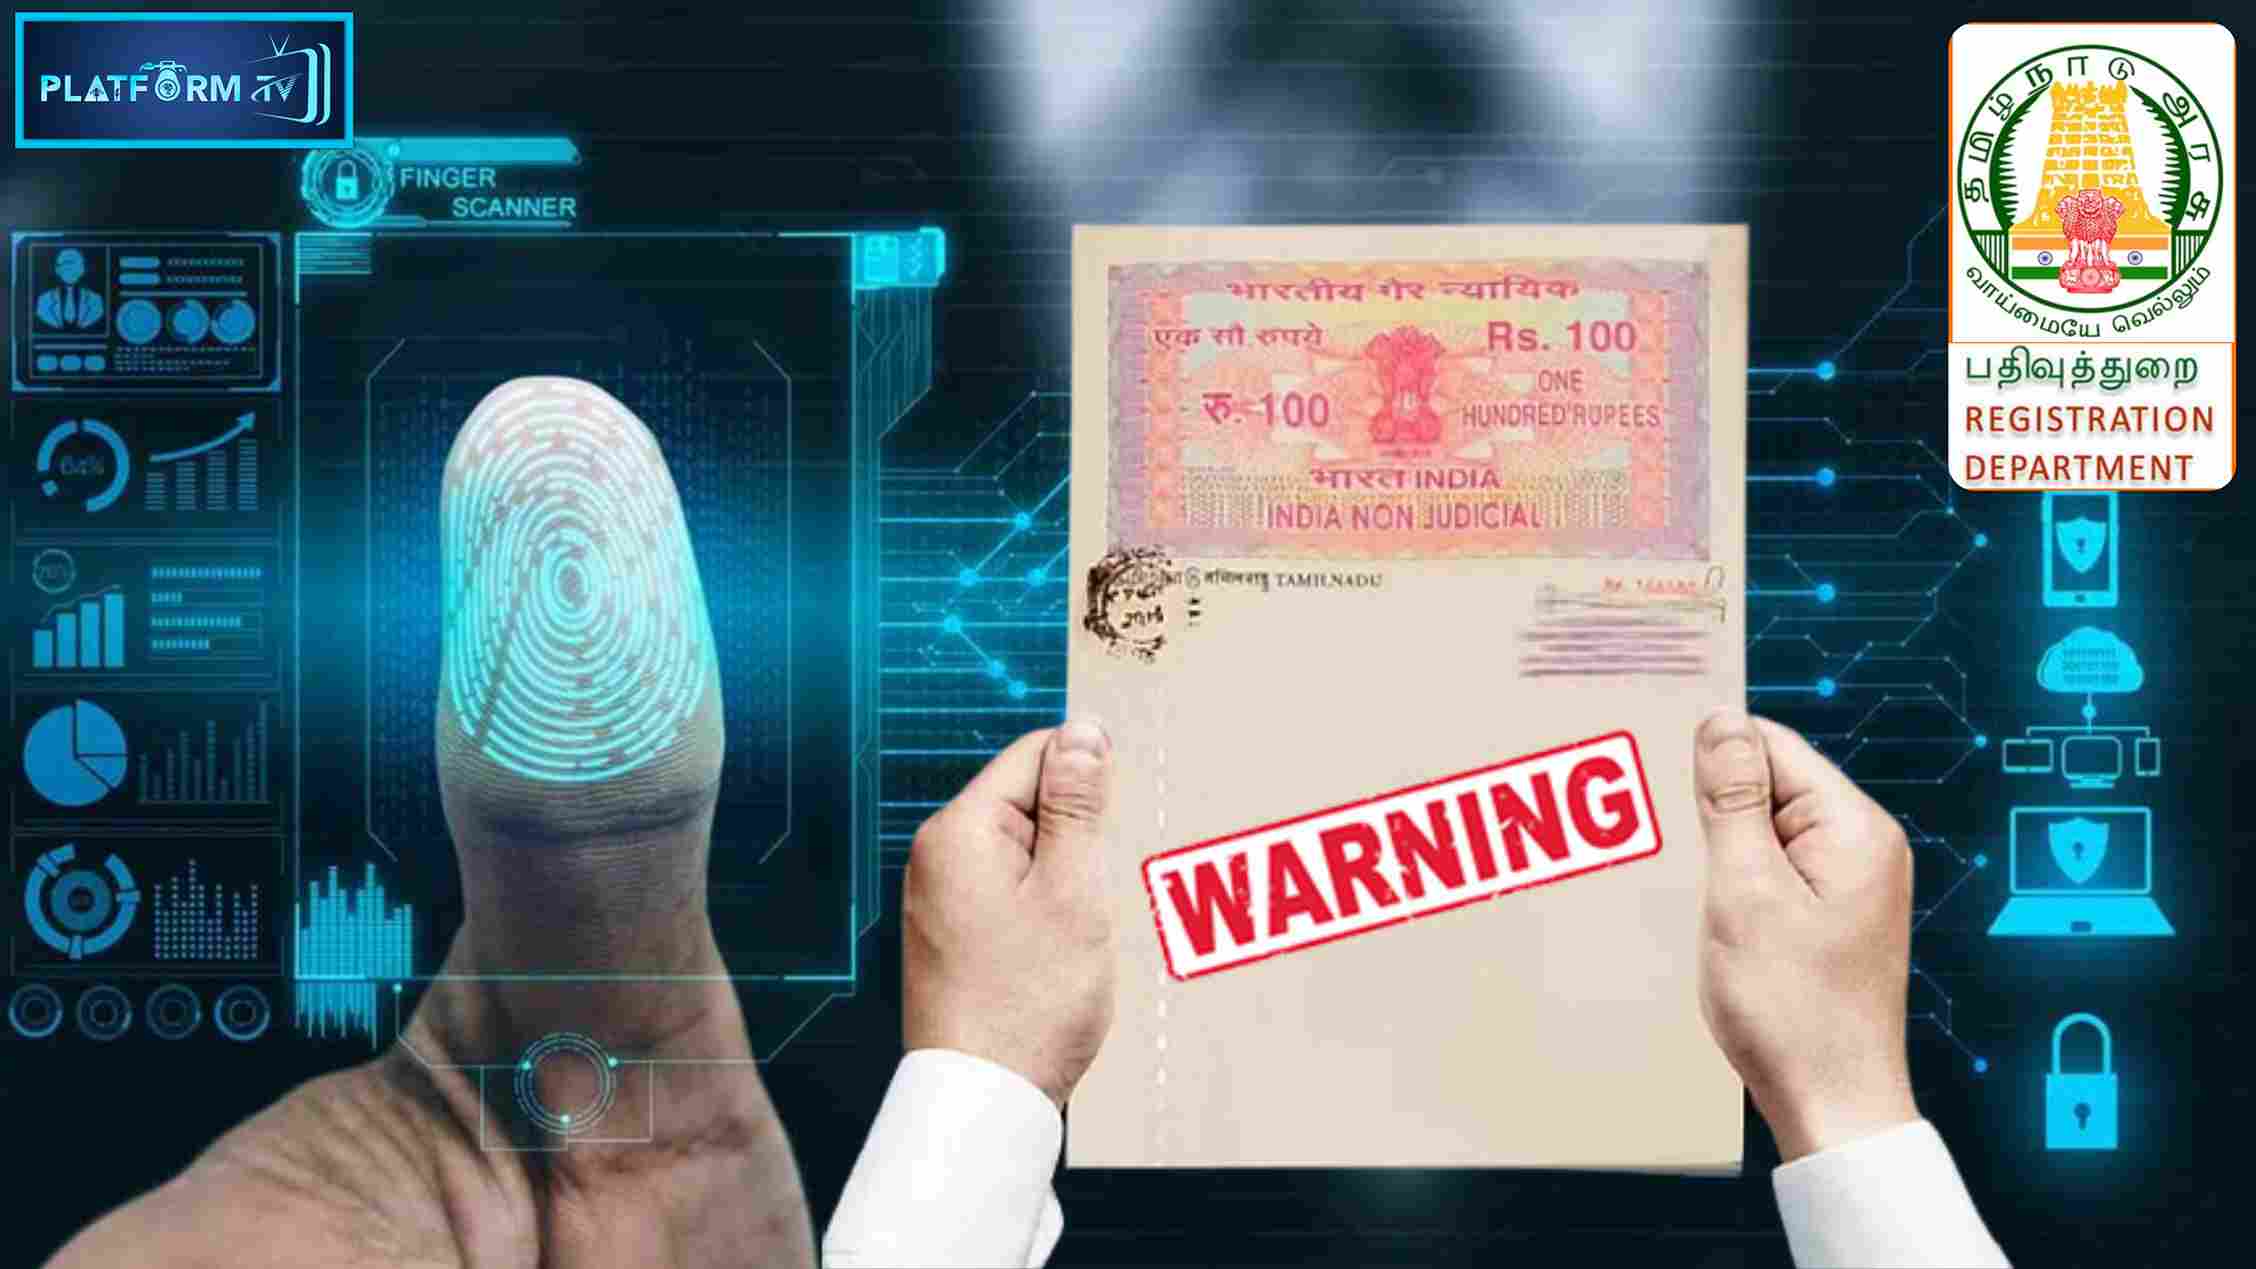 Fingerprint Scanner To Check Registration Fraud - Platform Tamil